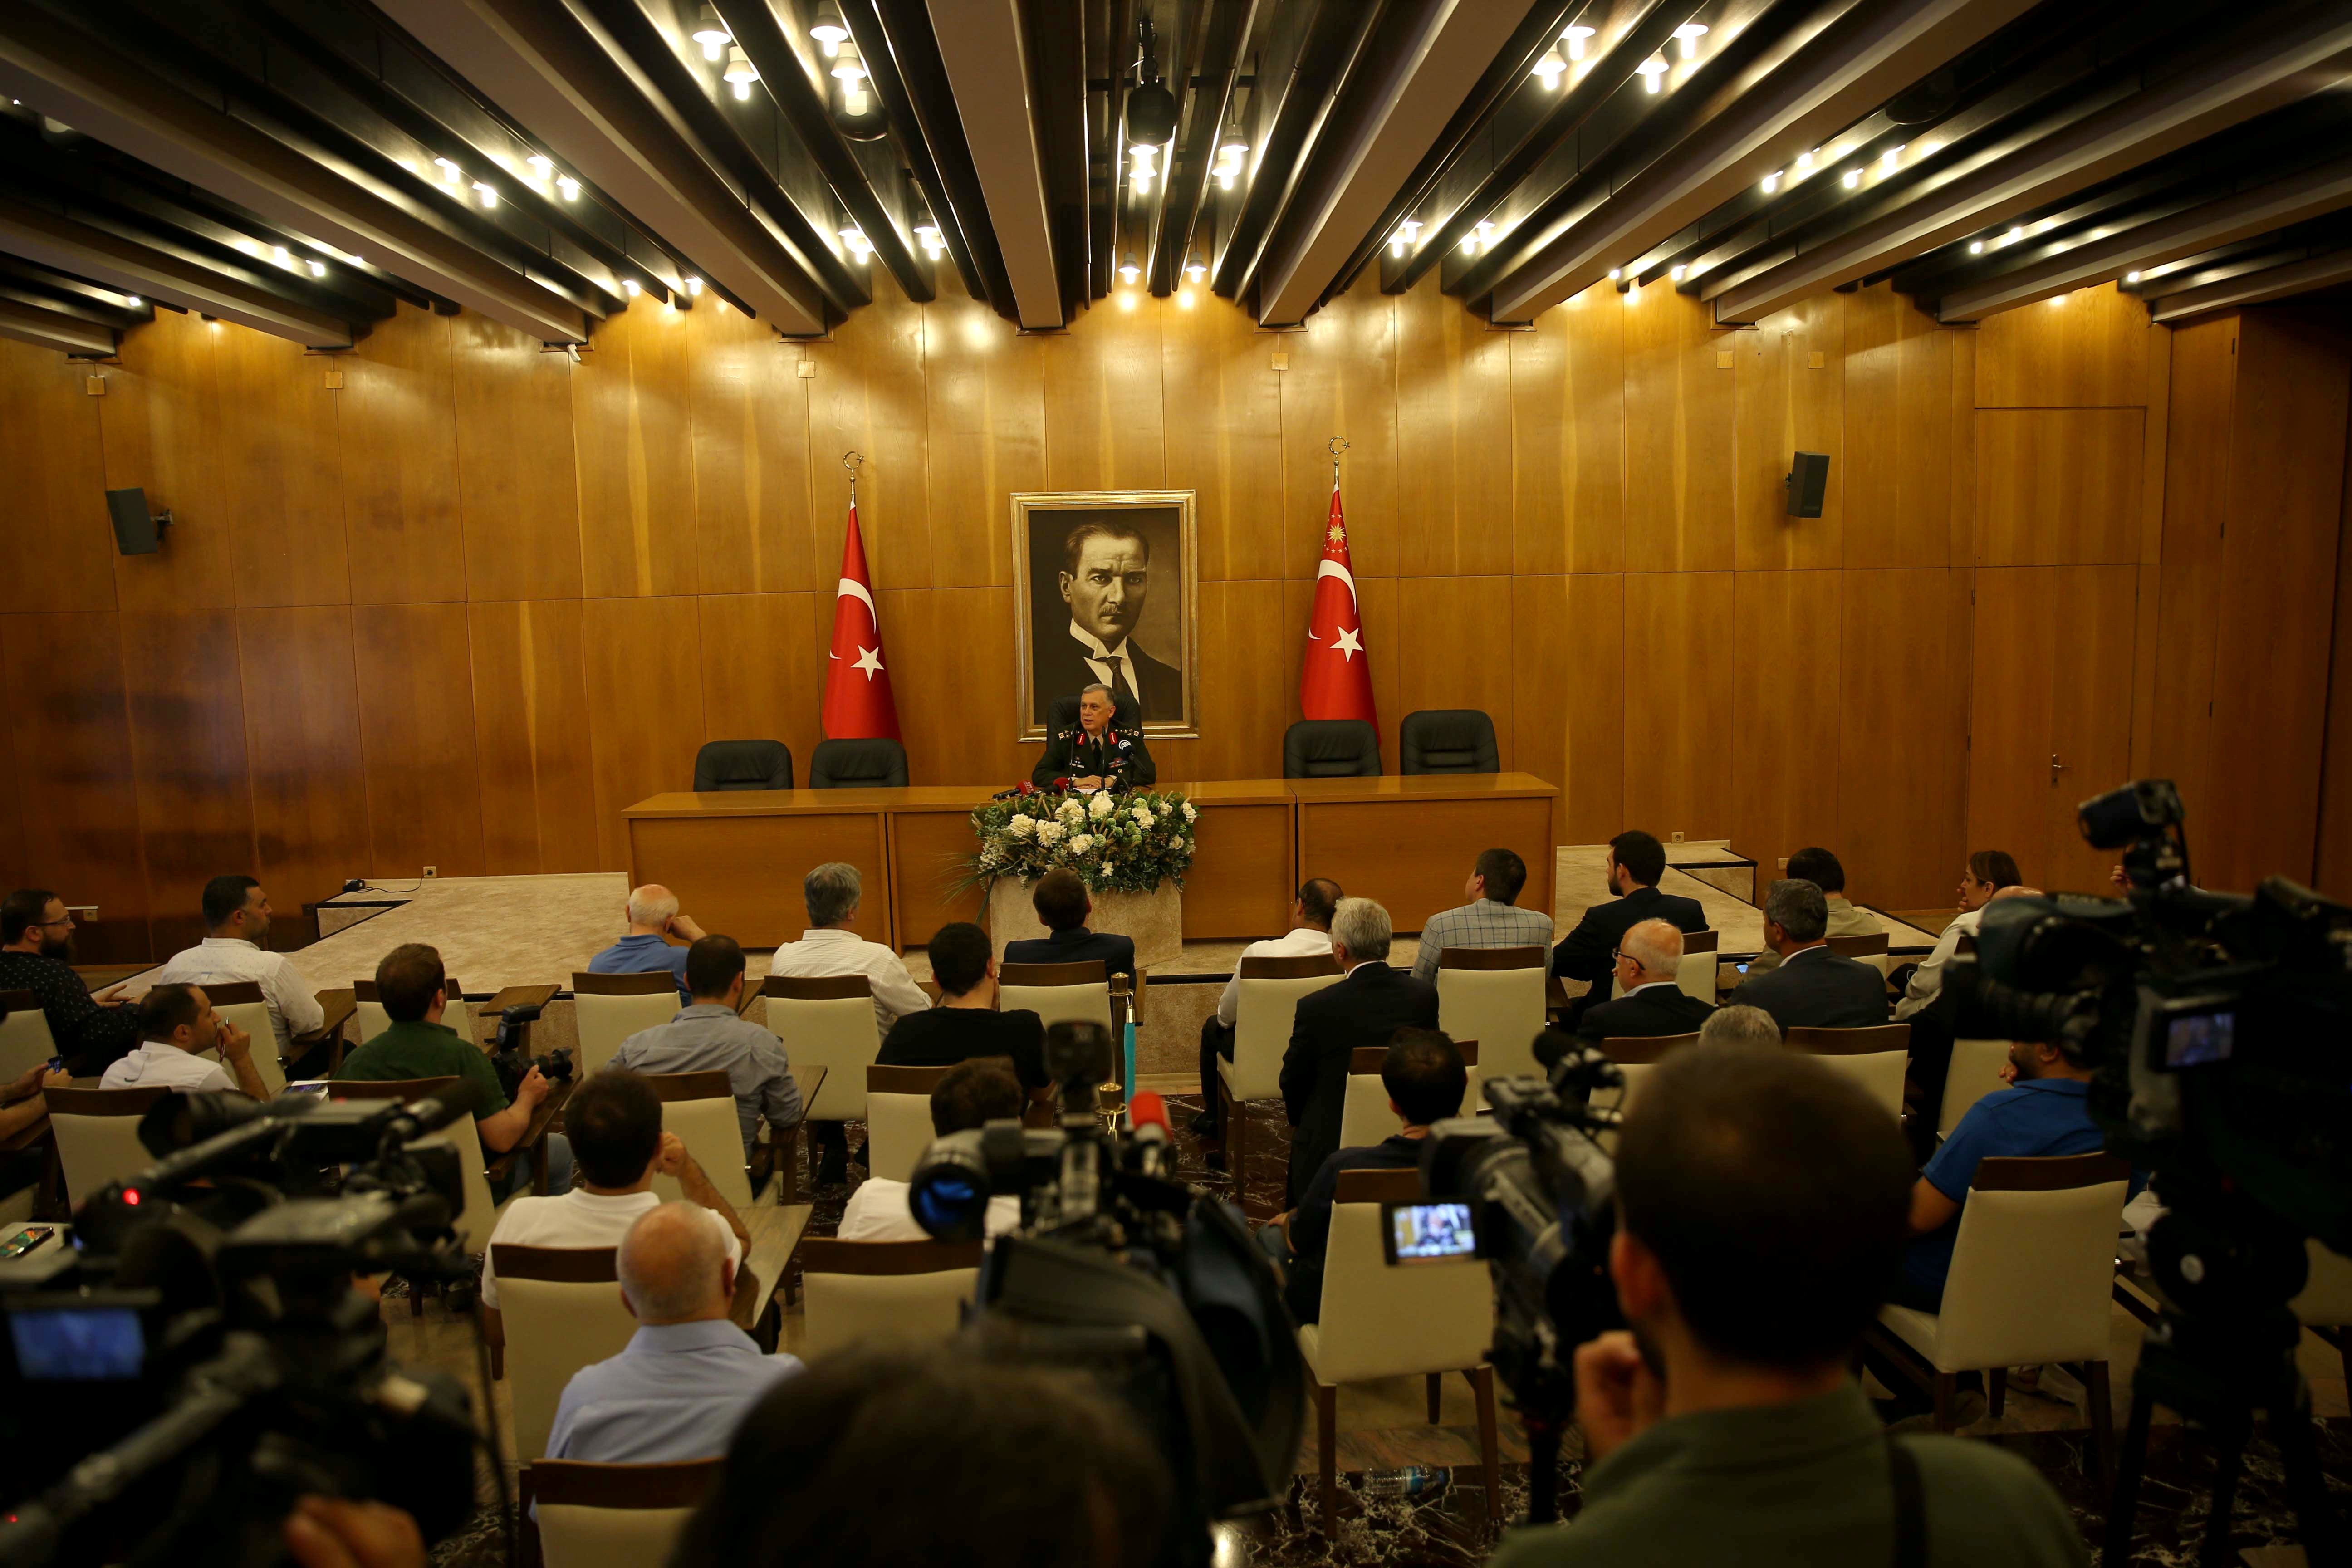 نظم الفريق أول اوميت دوندار وكيل رئيس الأركان مؤتمراً صحفياً في دار ضيافة رجال الدولة في مطار أتاتورك.